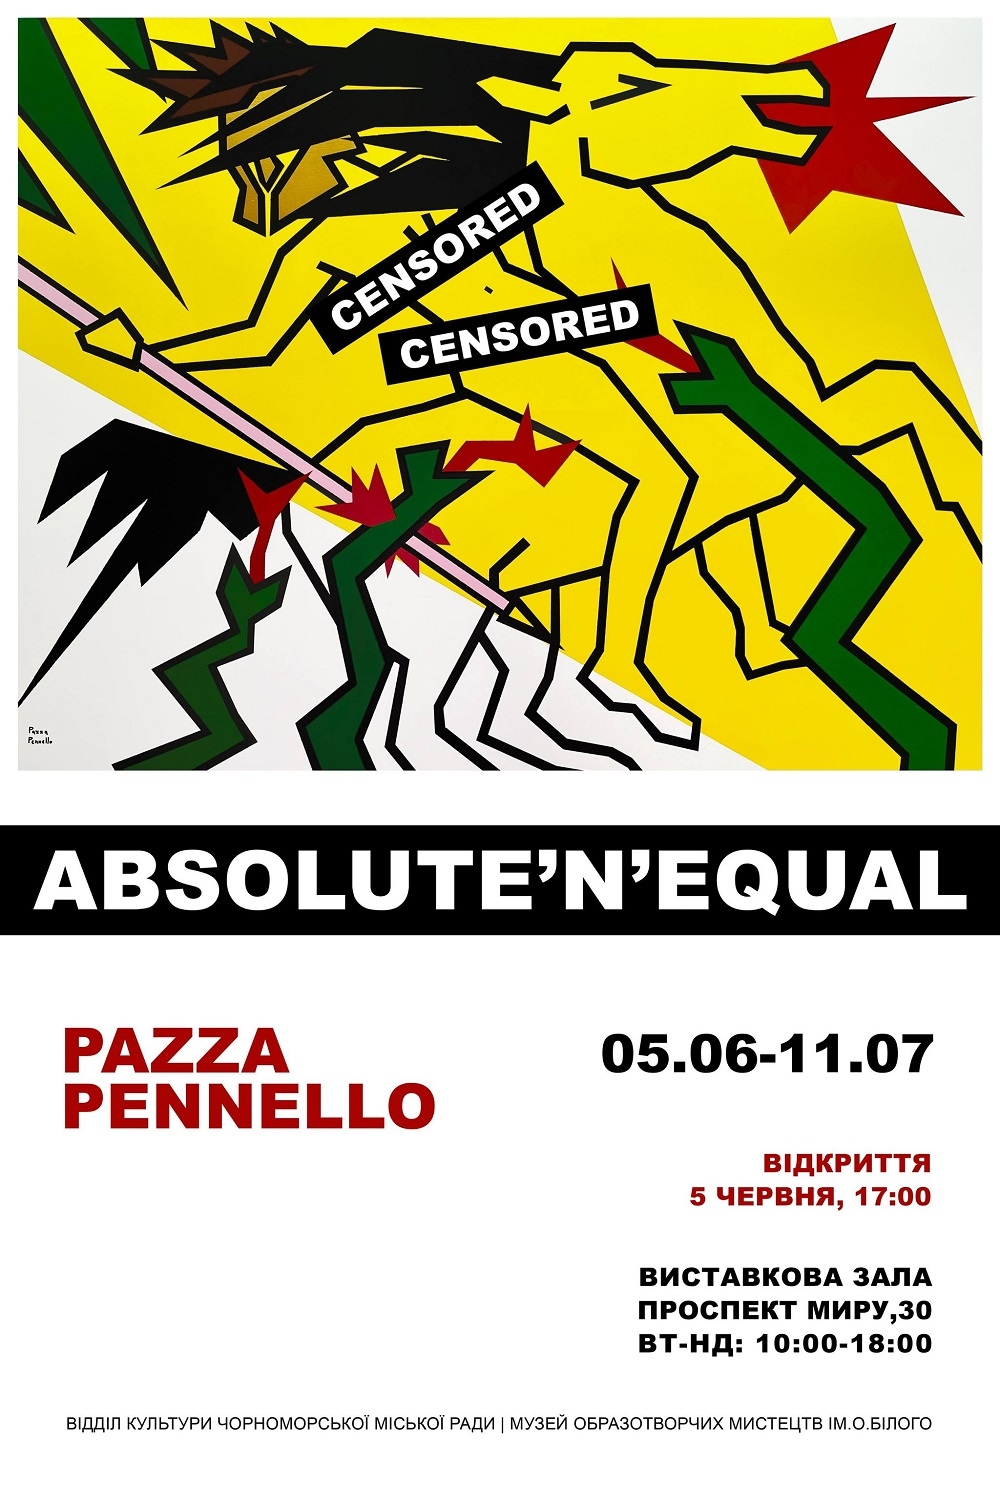 Ретро-естетика та фемінізм: не пропустіть відкриття персональної виставки художниці Pazza Pennello "Absolute'n'Equal" - фото №2